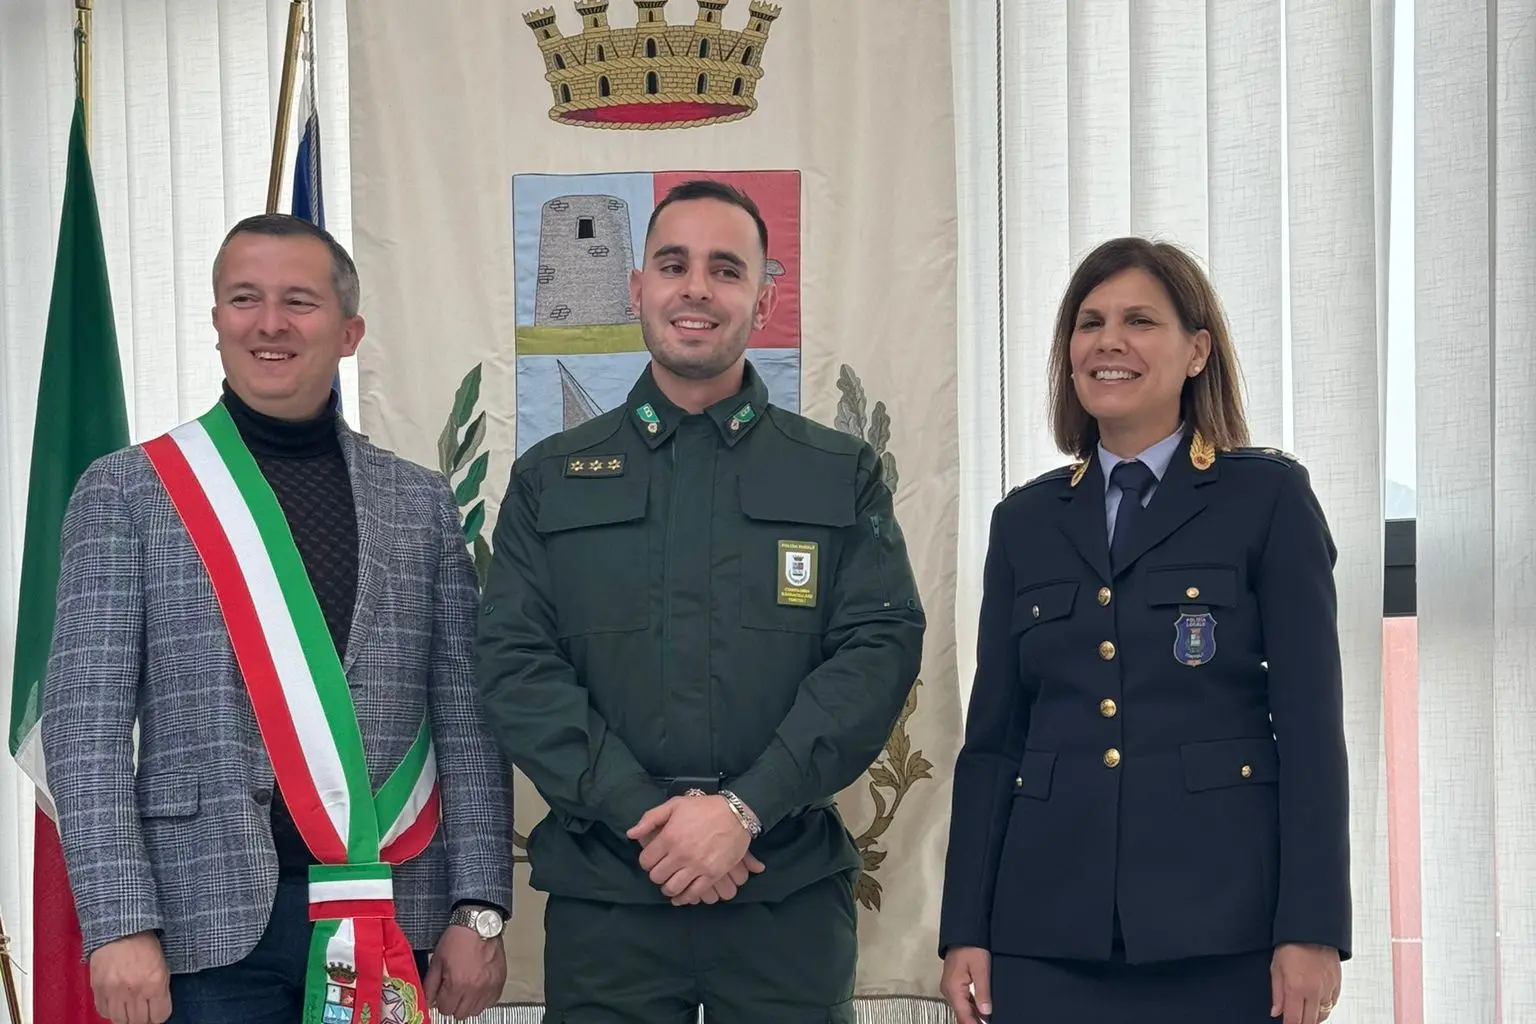 Da sinistra, Marcello Ladu, Maurizio Lorrai e Marta Meloni (foto concessa)